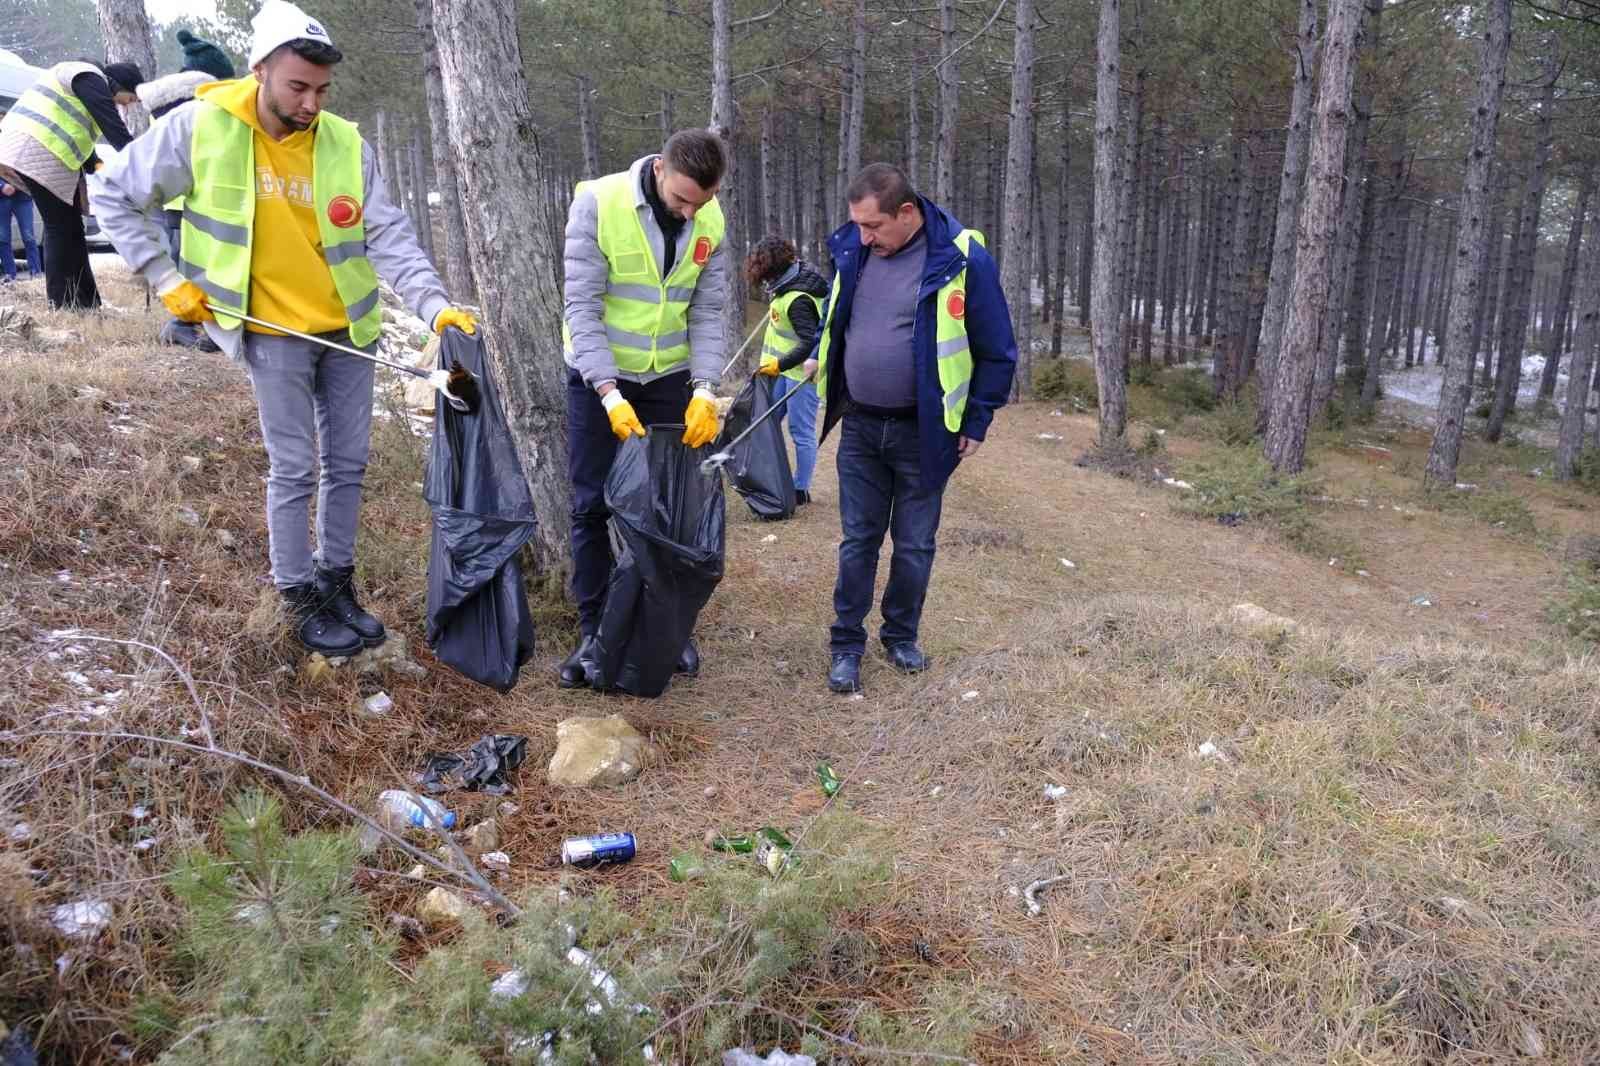 Çevre Gönüllüleri, ormanda çöp topladı #kastamonu